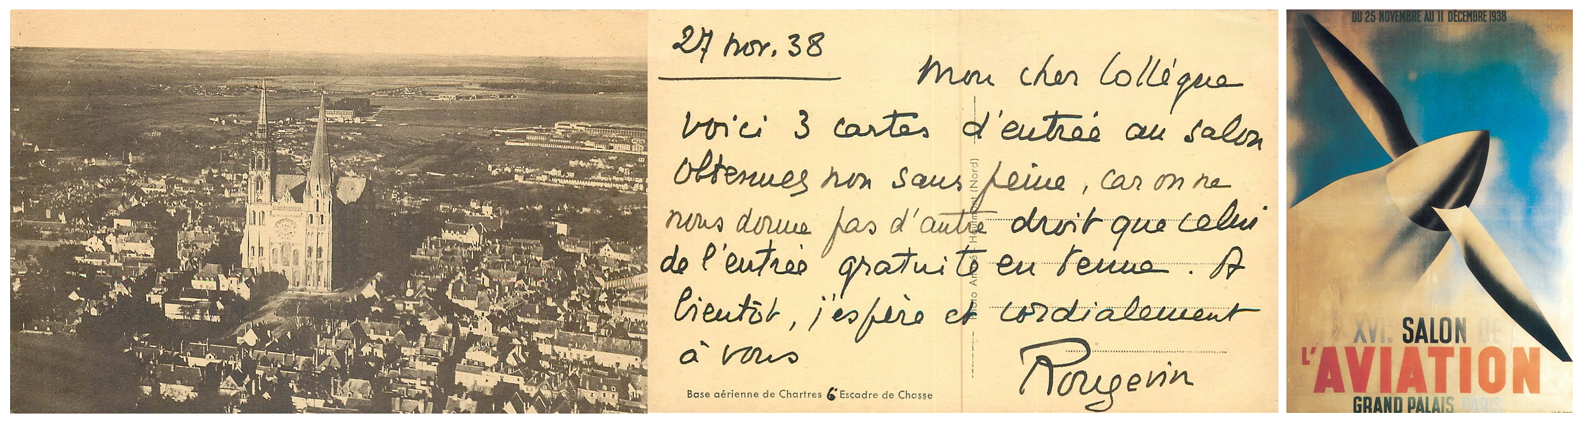 Carte postale du lieutenant-colonel Alfred Andr ROUGEVIN BAVILLE, commandant de la 6me Escadre - XVIIme salon de l'Aviation n Paris.